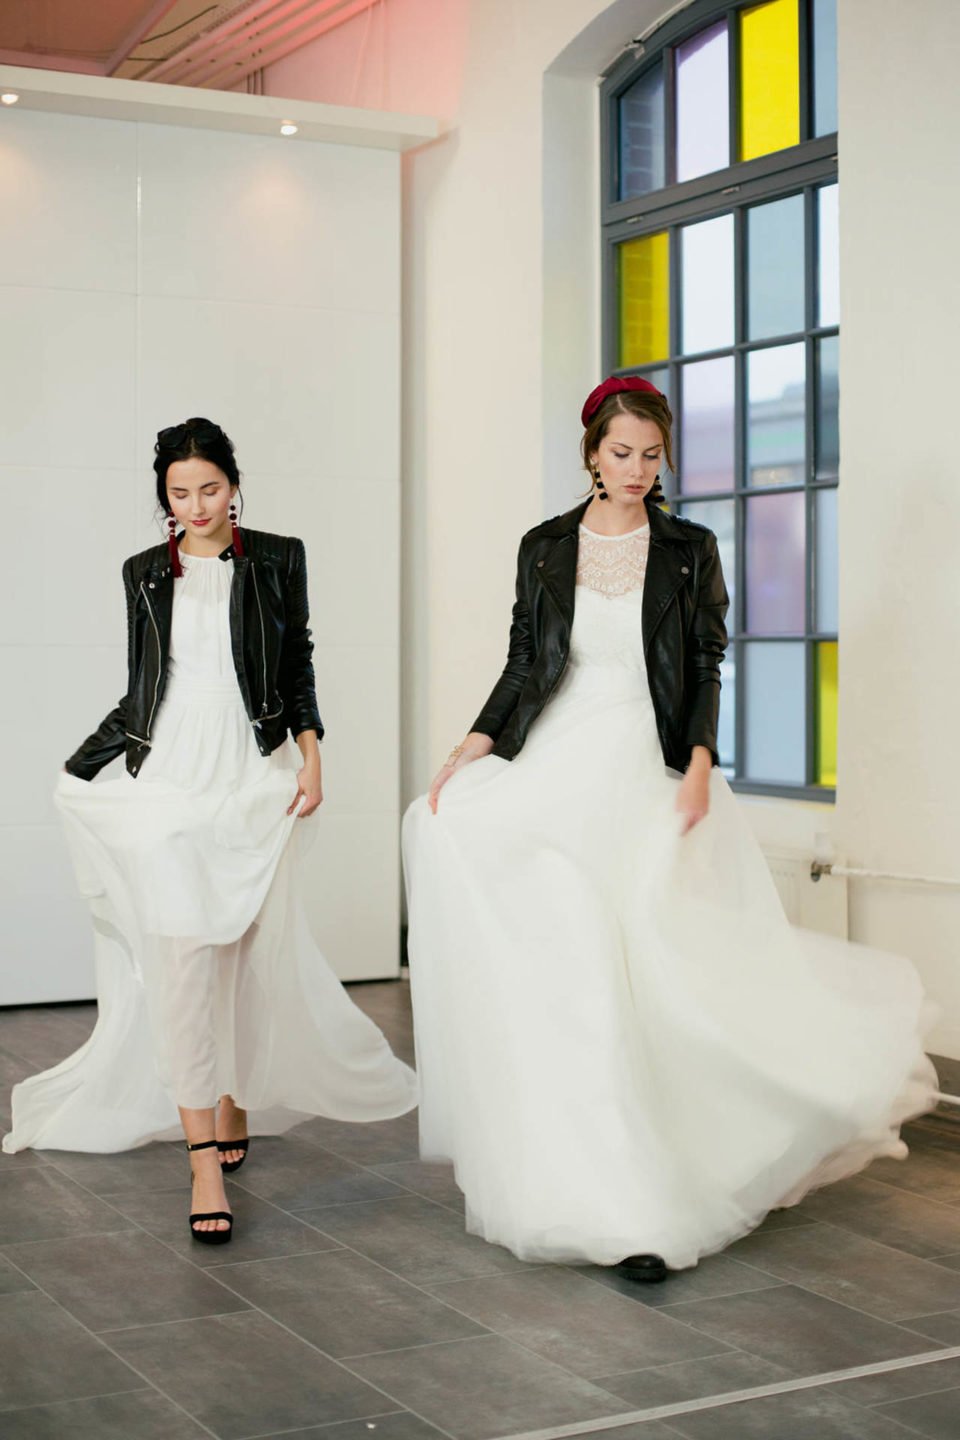 Brautkleider minimalistisch und clean mit Lederjacke